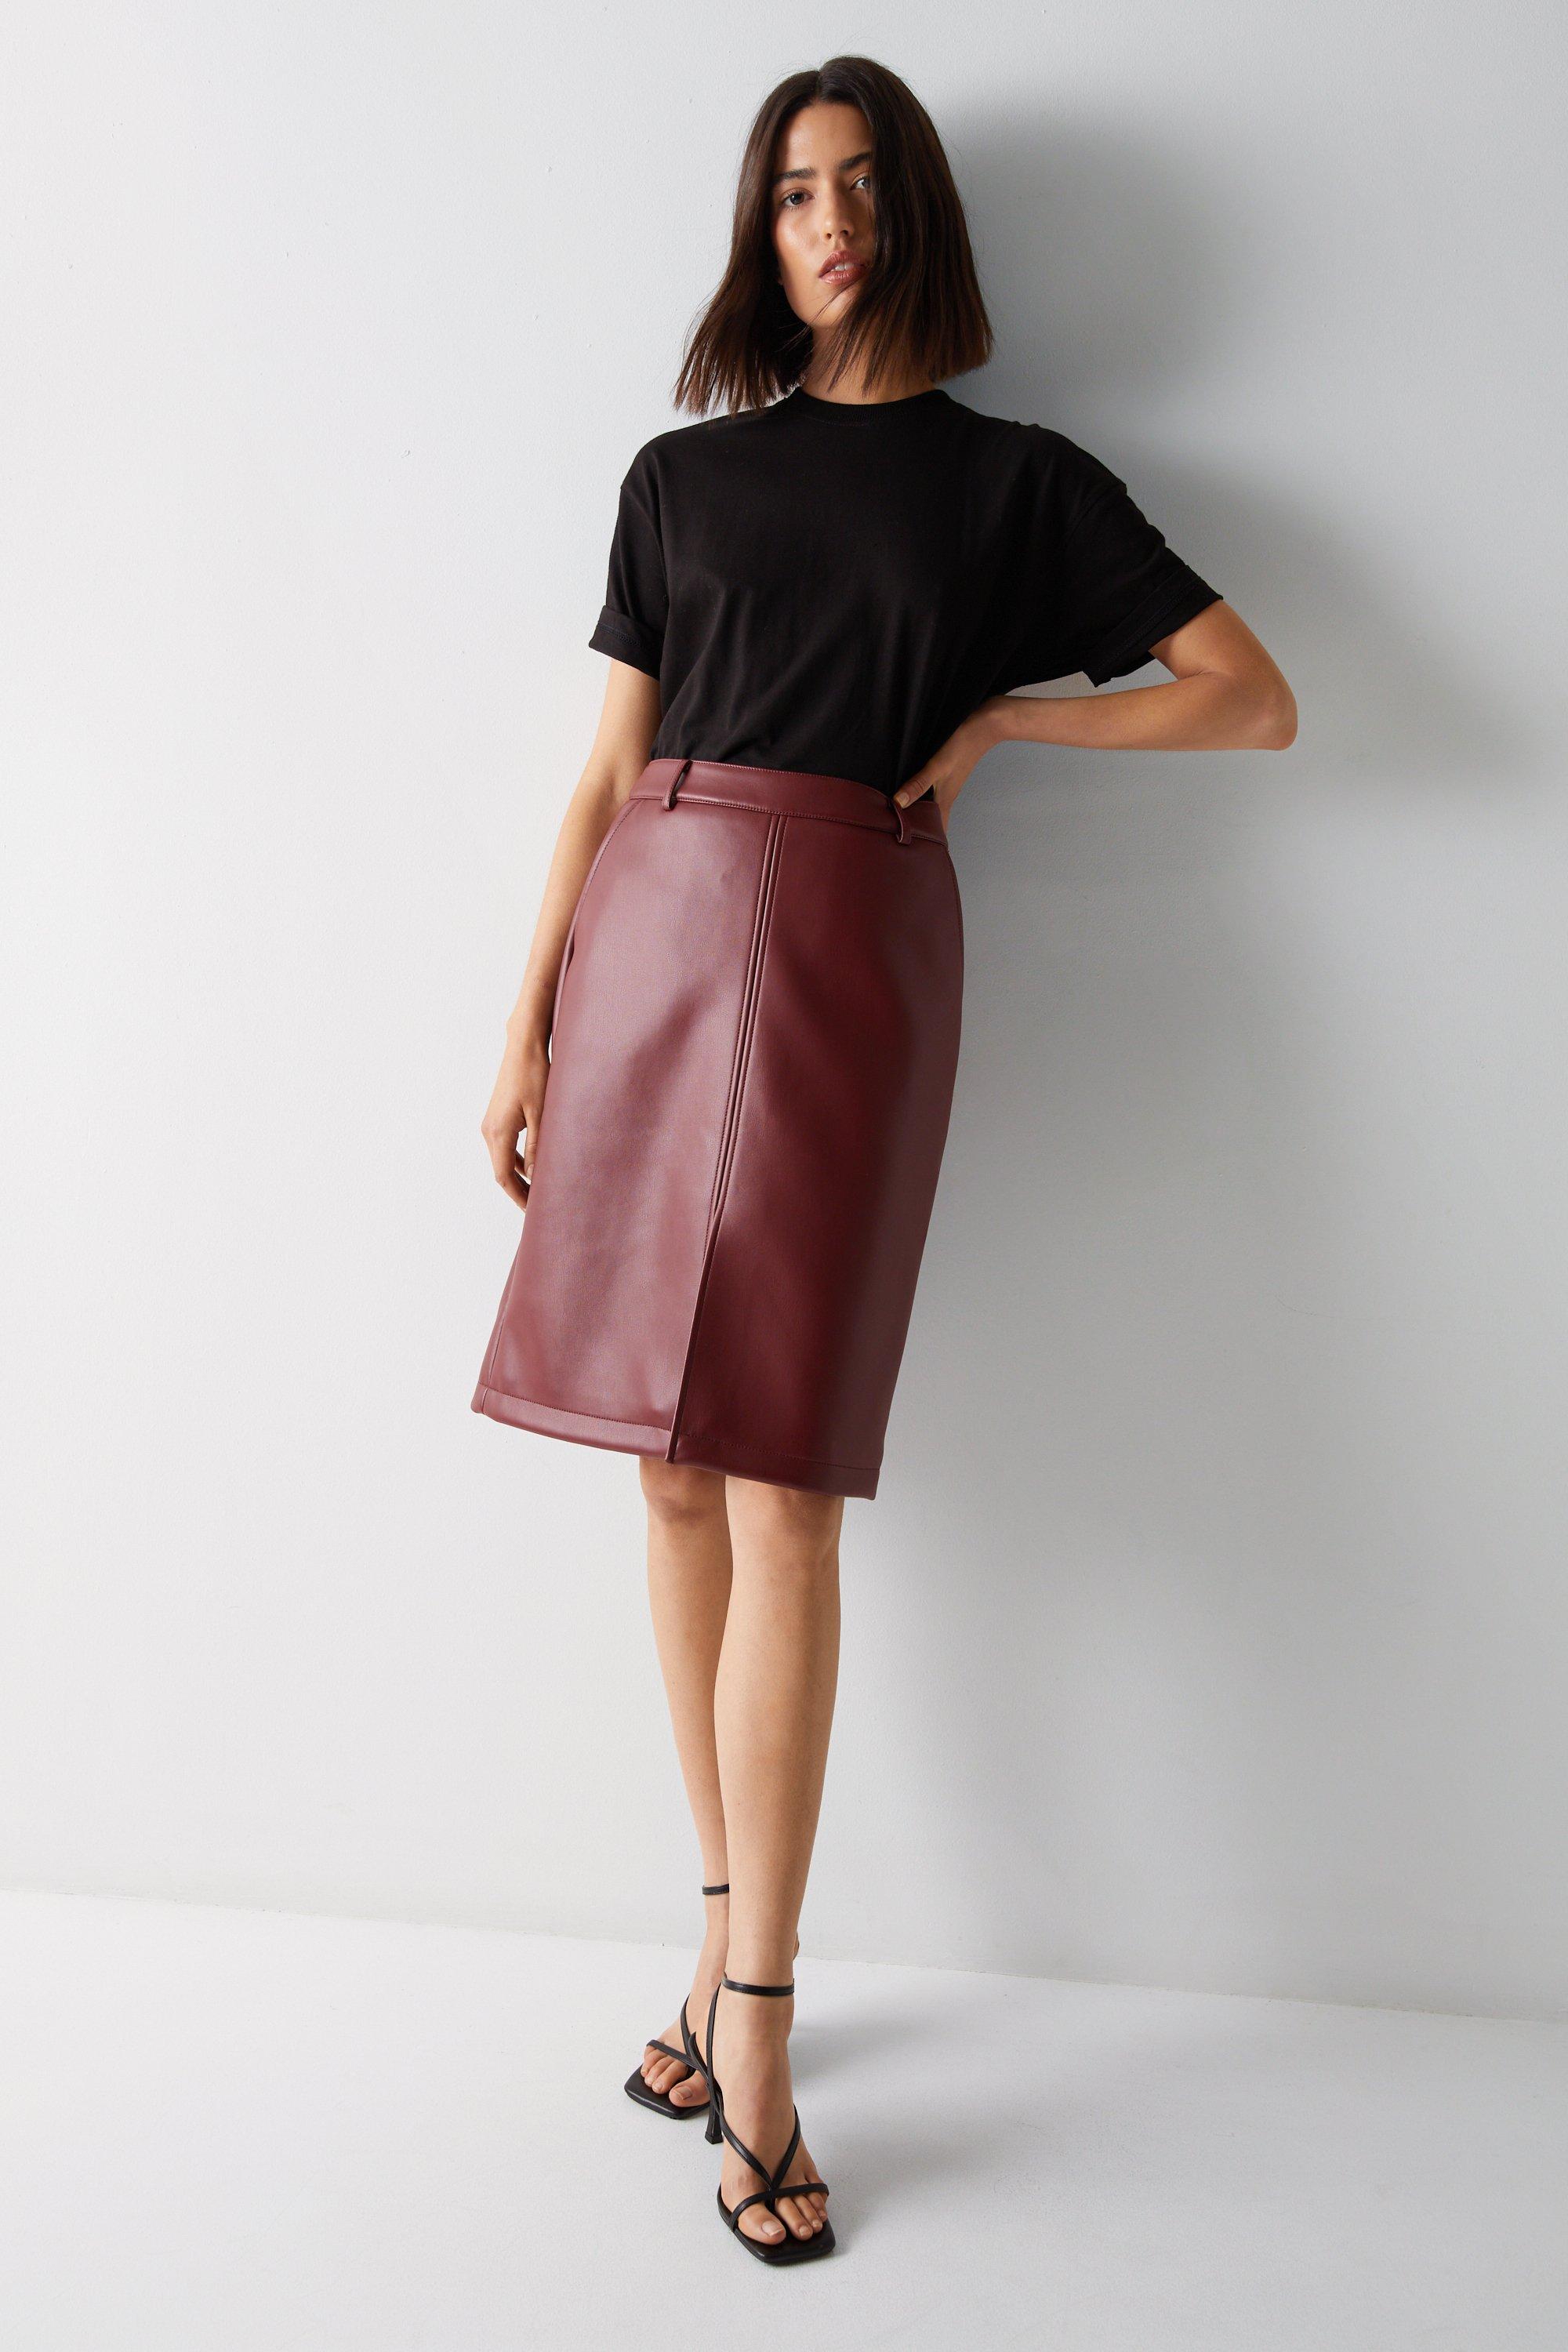 Women's Skirts | Ladies Skirts | Warehouse UK